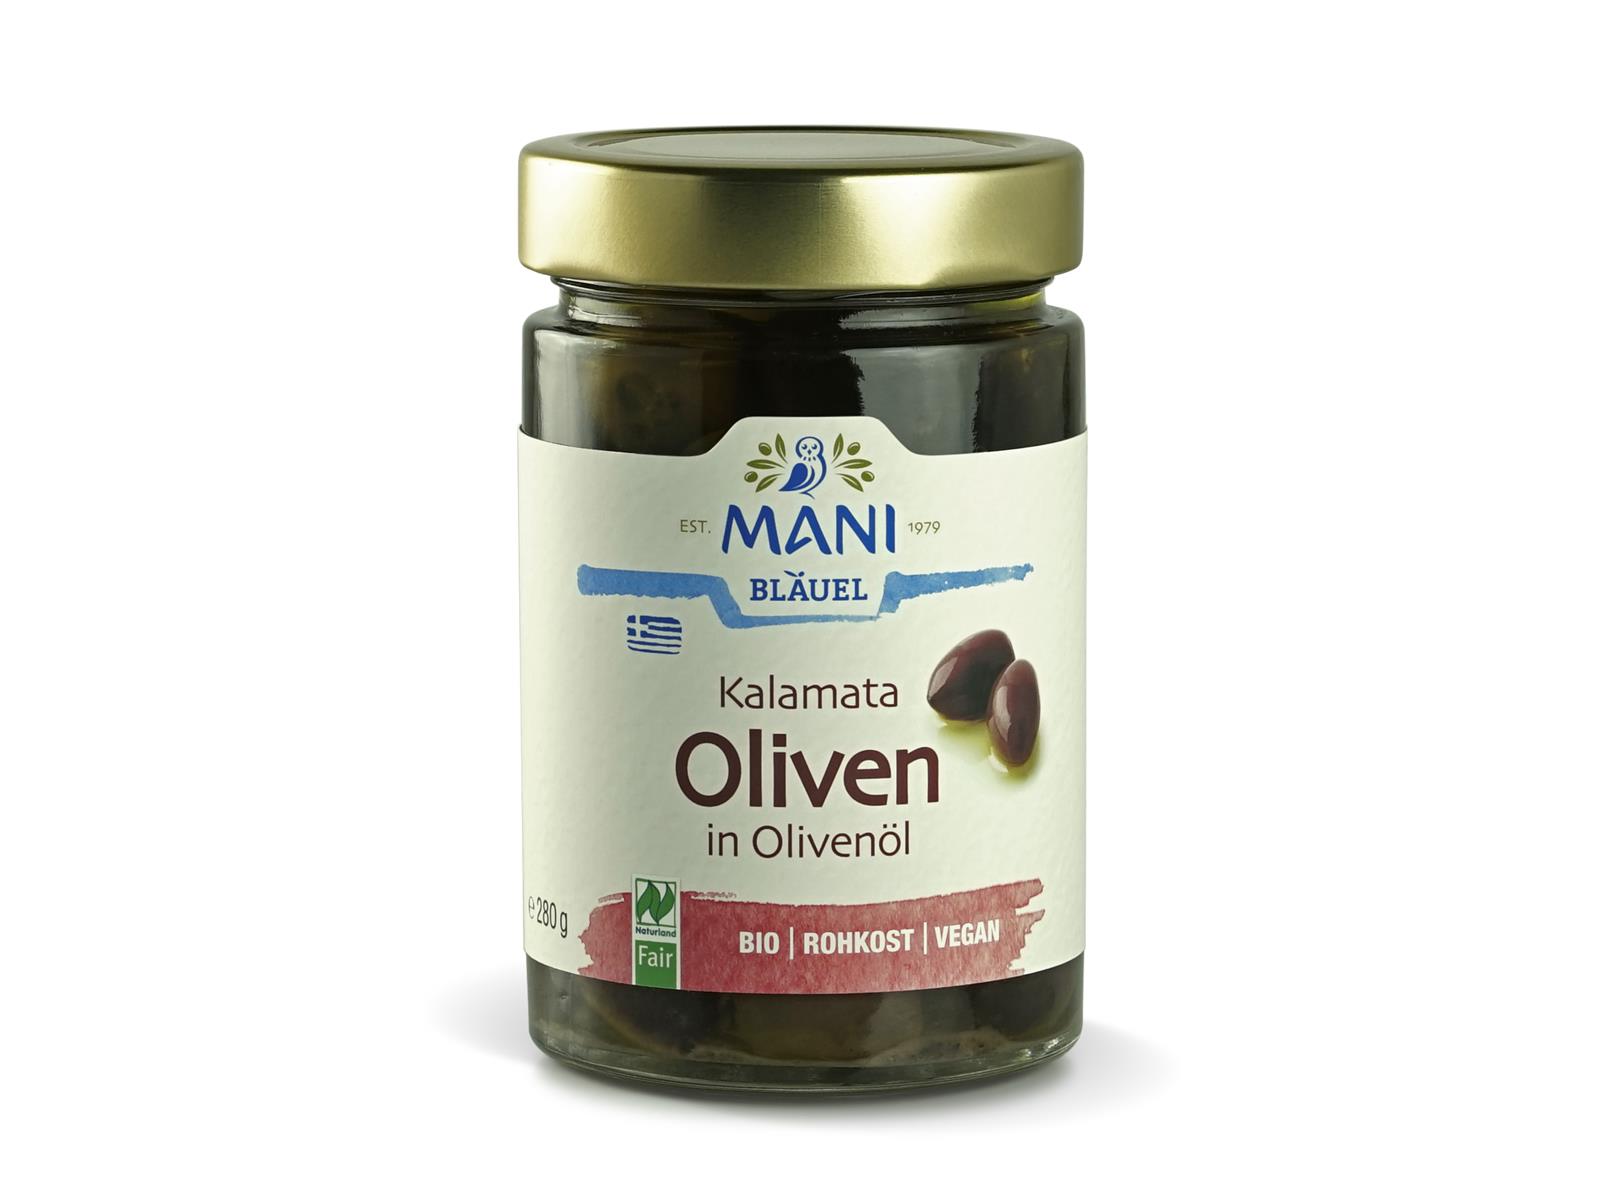 Mani Bläuel Kalamata Oliven in Olivenöl 280 g